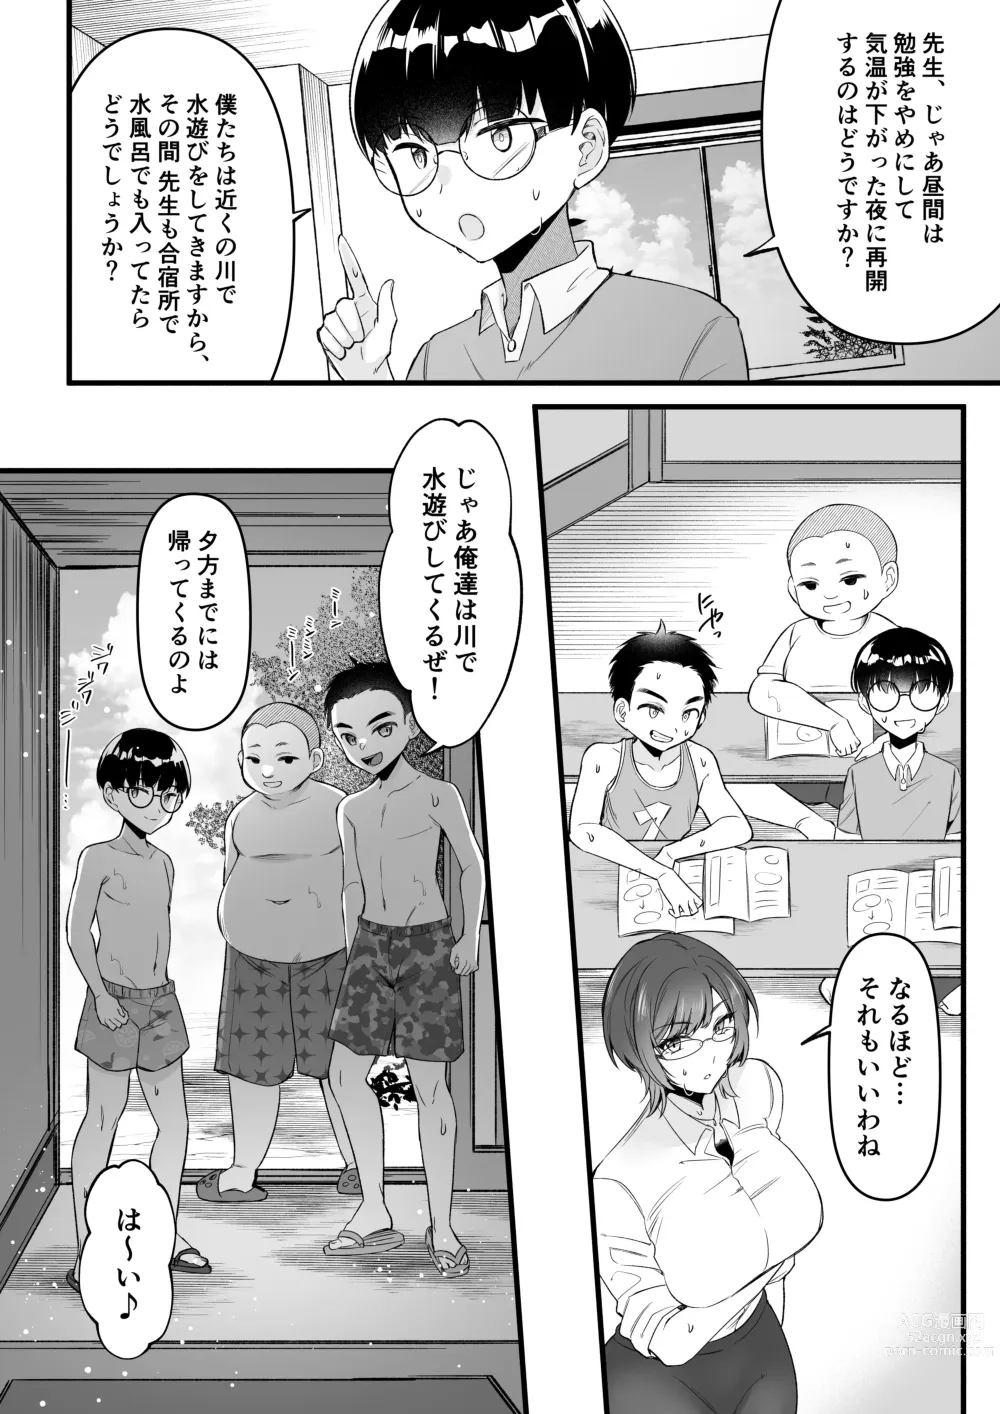 Page 6 of doujinshi Natsu Gasshuku Innocence